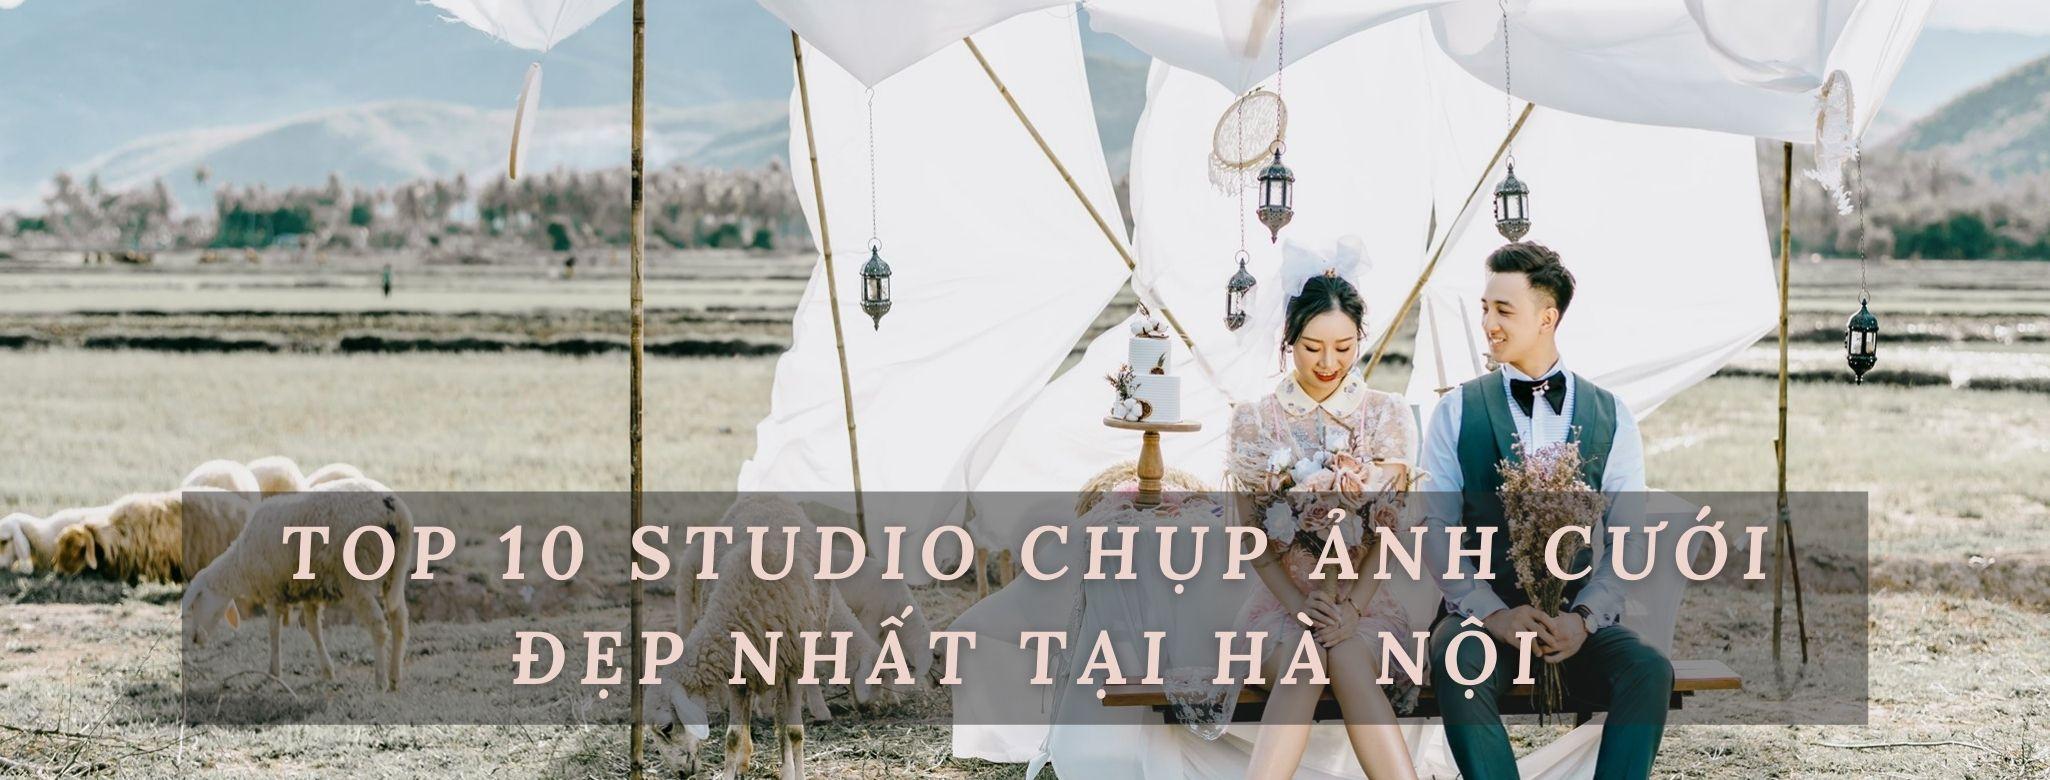 Với danh sách Top 10 studio chụp ảnh cưới uy tín tại Hà Nội, chúng tôi tự hào là một trong những địa chỉ chụp ảnh cưới đáng tin cậy nhất. Dịch vụ chuyên nghiệp, không gian chụp ảnh đẹp và chất lượng tuyệt vời sẽ đem lại cho bạn những trải nghiệm đáng nhớ nhất của cuộc đời.